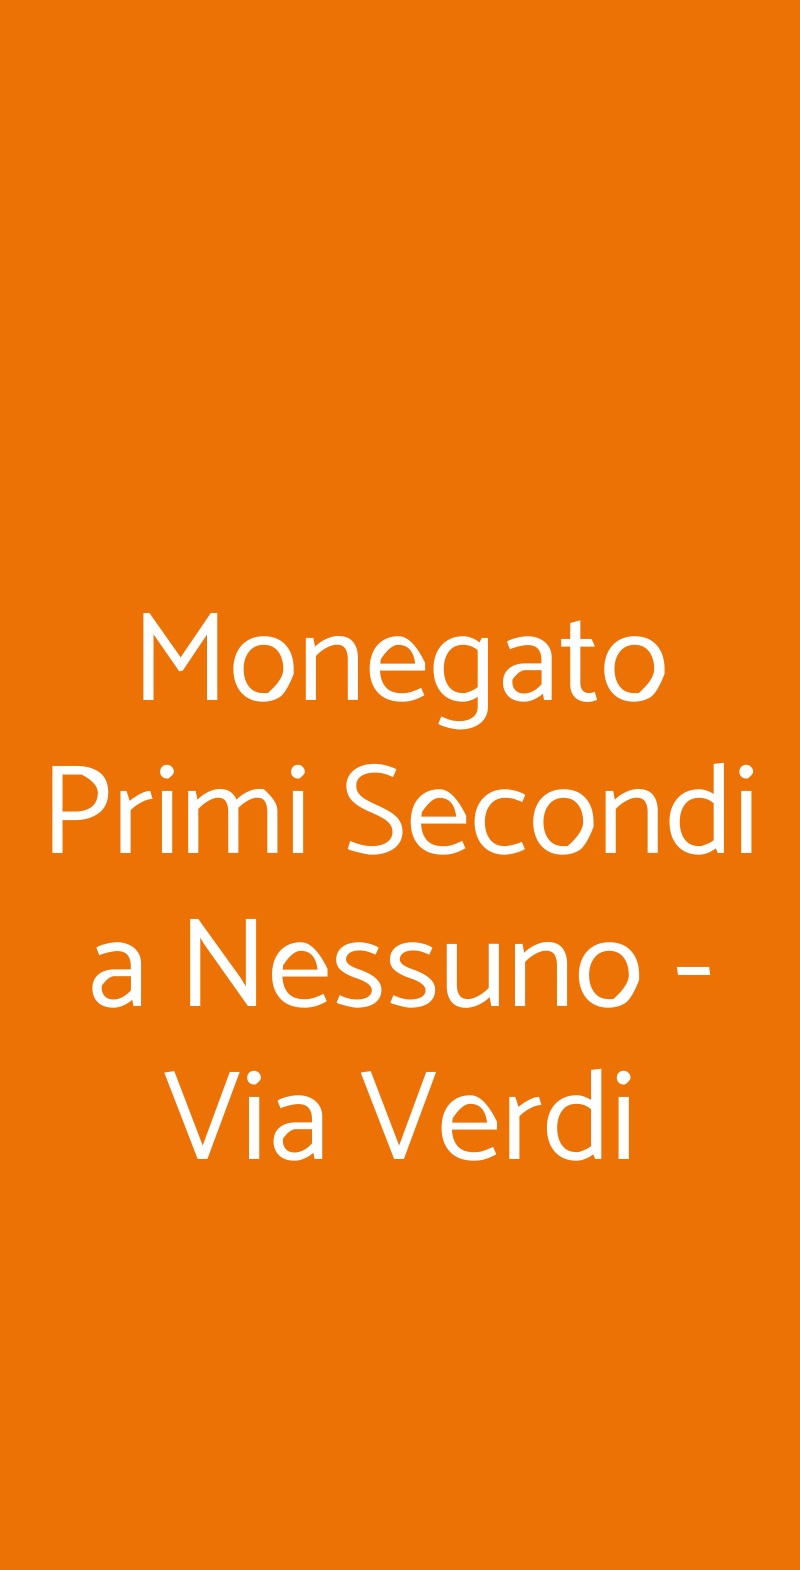 Monegato Primi Secondi a Nessuno - Via Verdi Torino menù 1 pagina